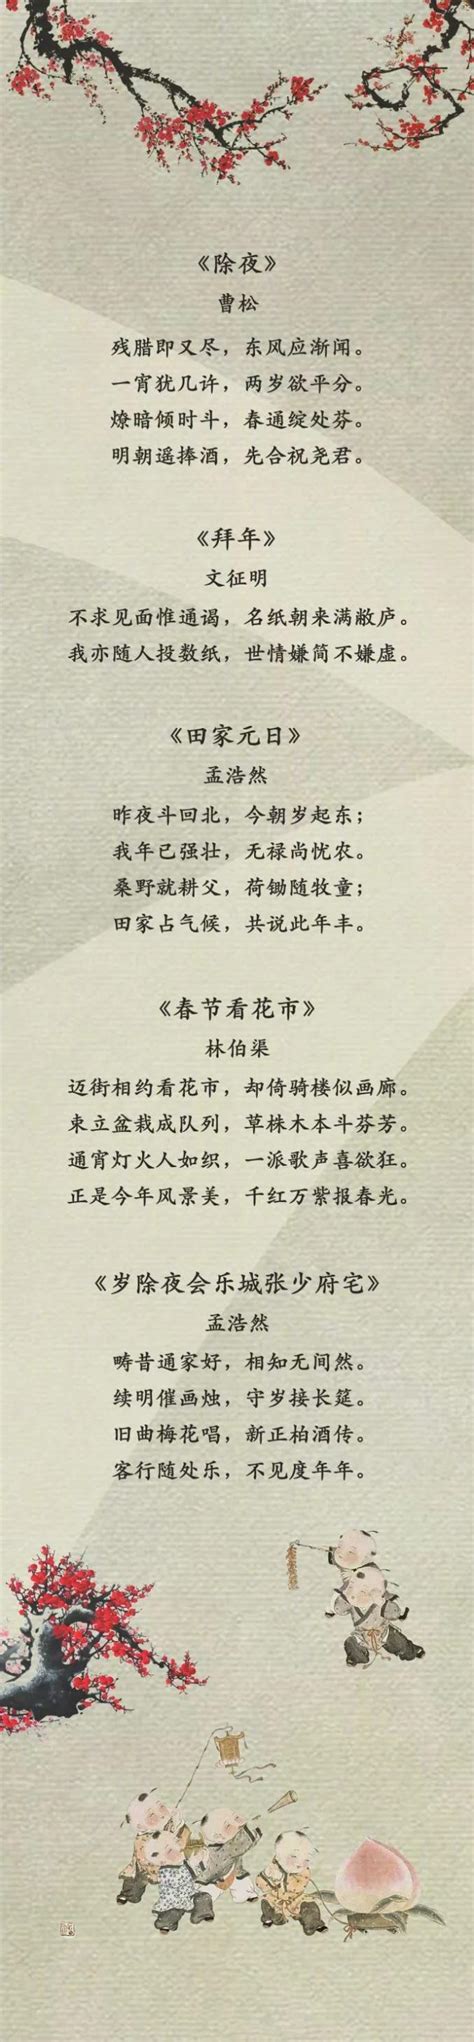 中国新年的诗词